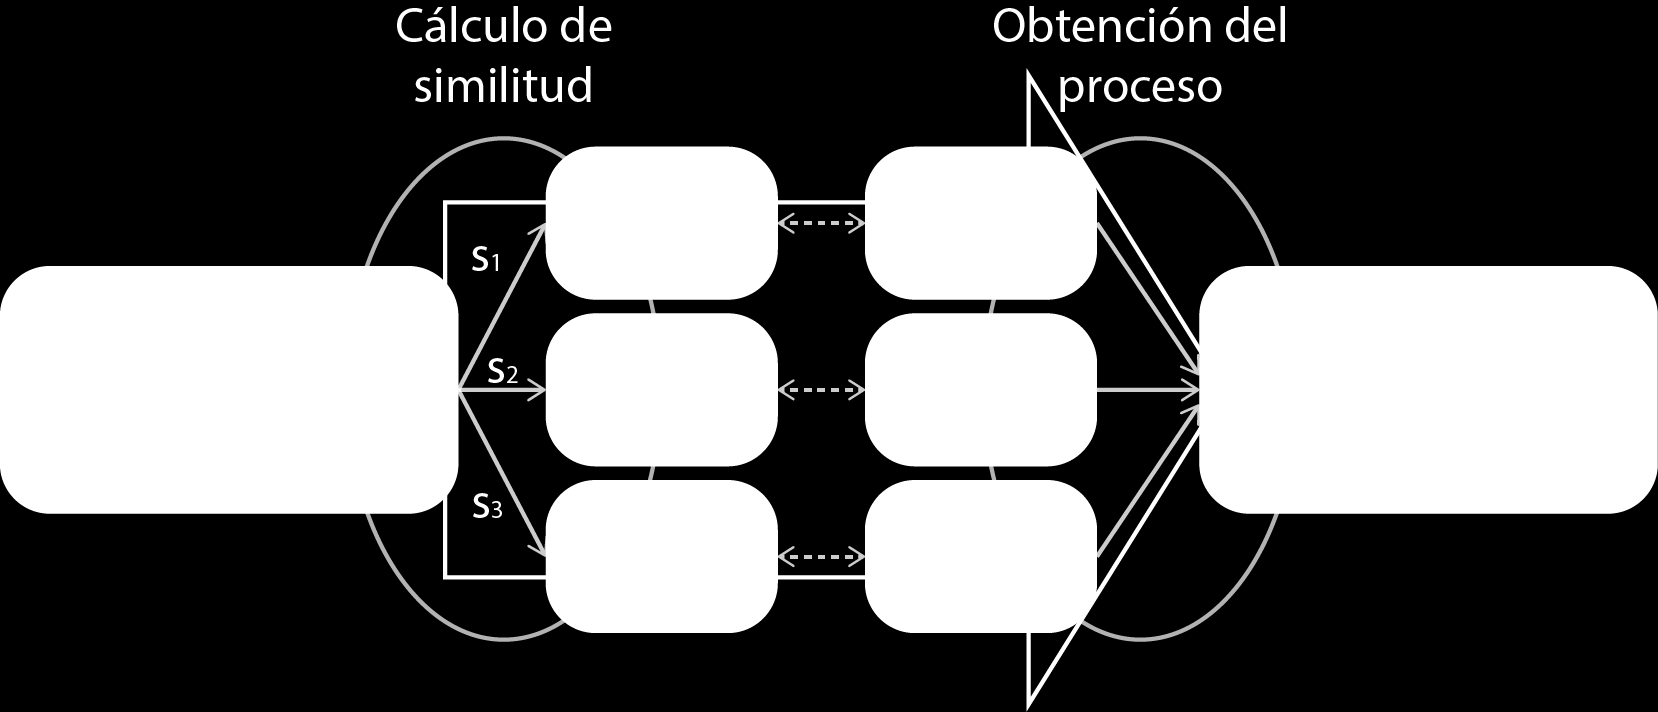 Capítulo 4 4.2. PROCESOS PREDEFINIDOS utilizan dos operaciones para efectuar una adaptación: cálculo de similitud y obtención del proceso. Ilustración 4.